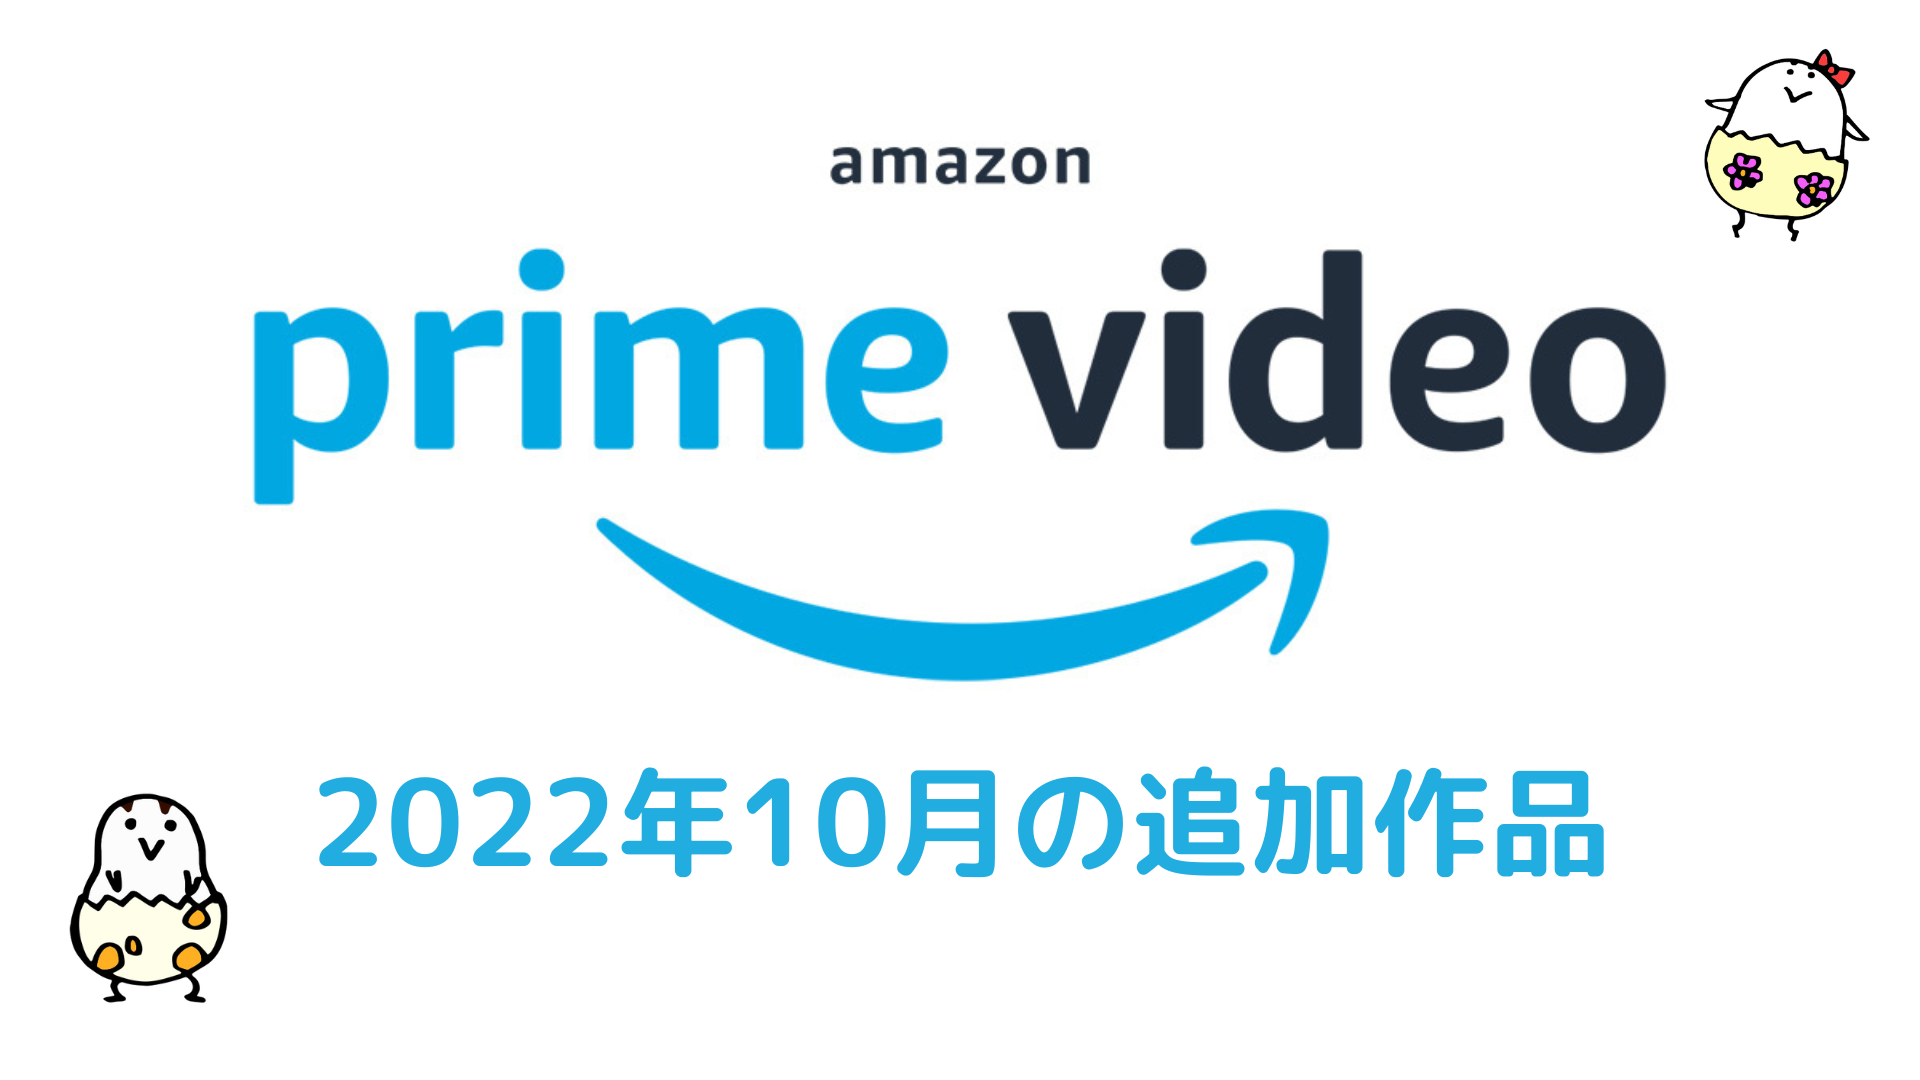 Amazonプライム・ビデオ 2022年10月配信作品一覧！ 秋アニメ放送スタート『チェンソーマン』『僕のヒーローアカデミア6期』は最速配信 映画『ククルス・ドアン』も